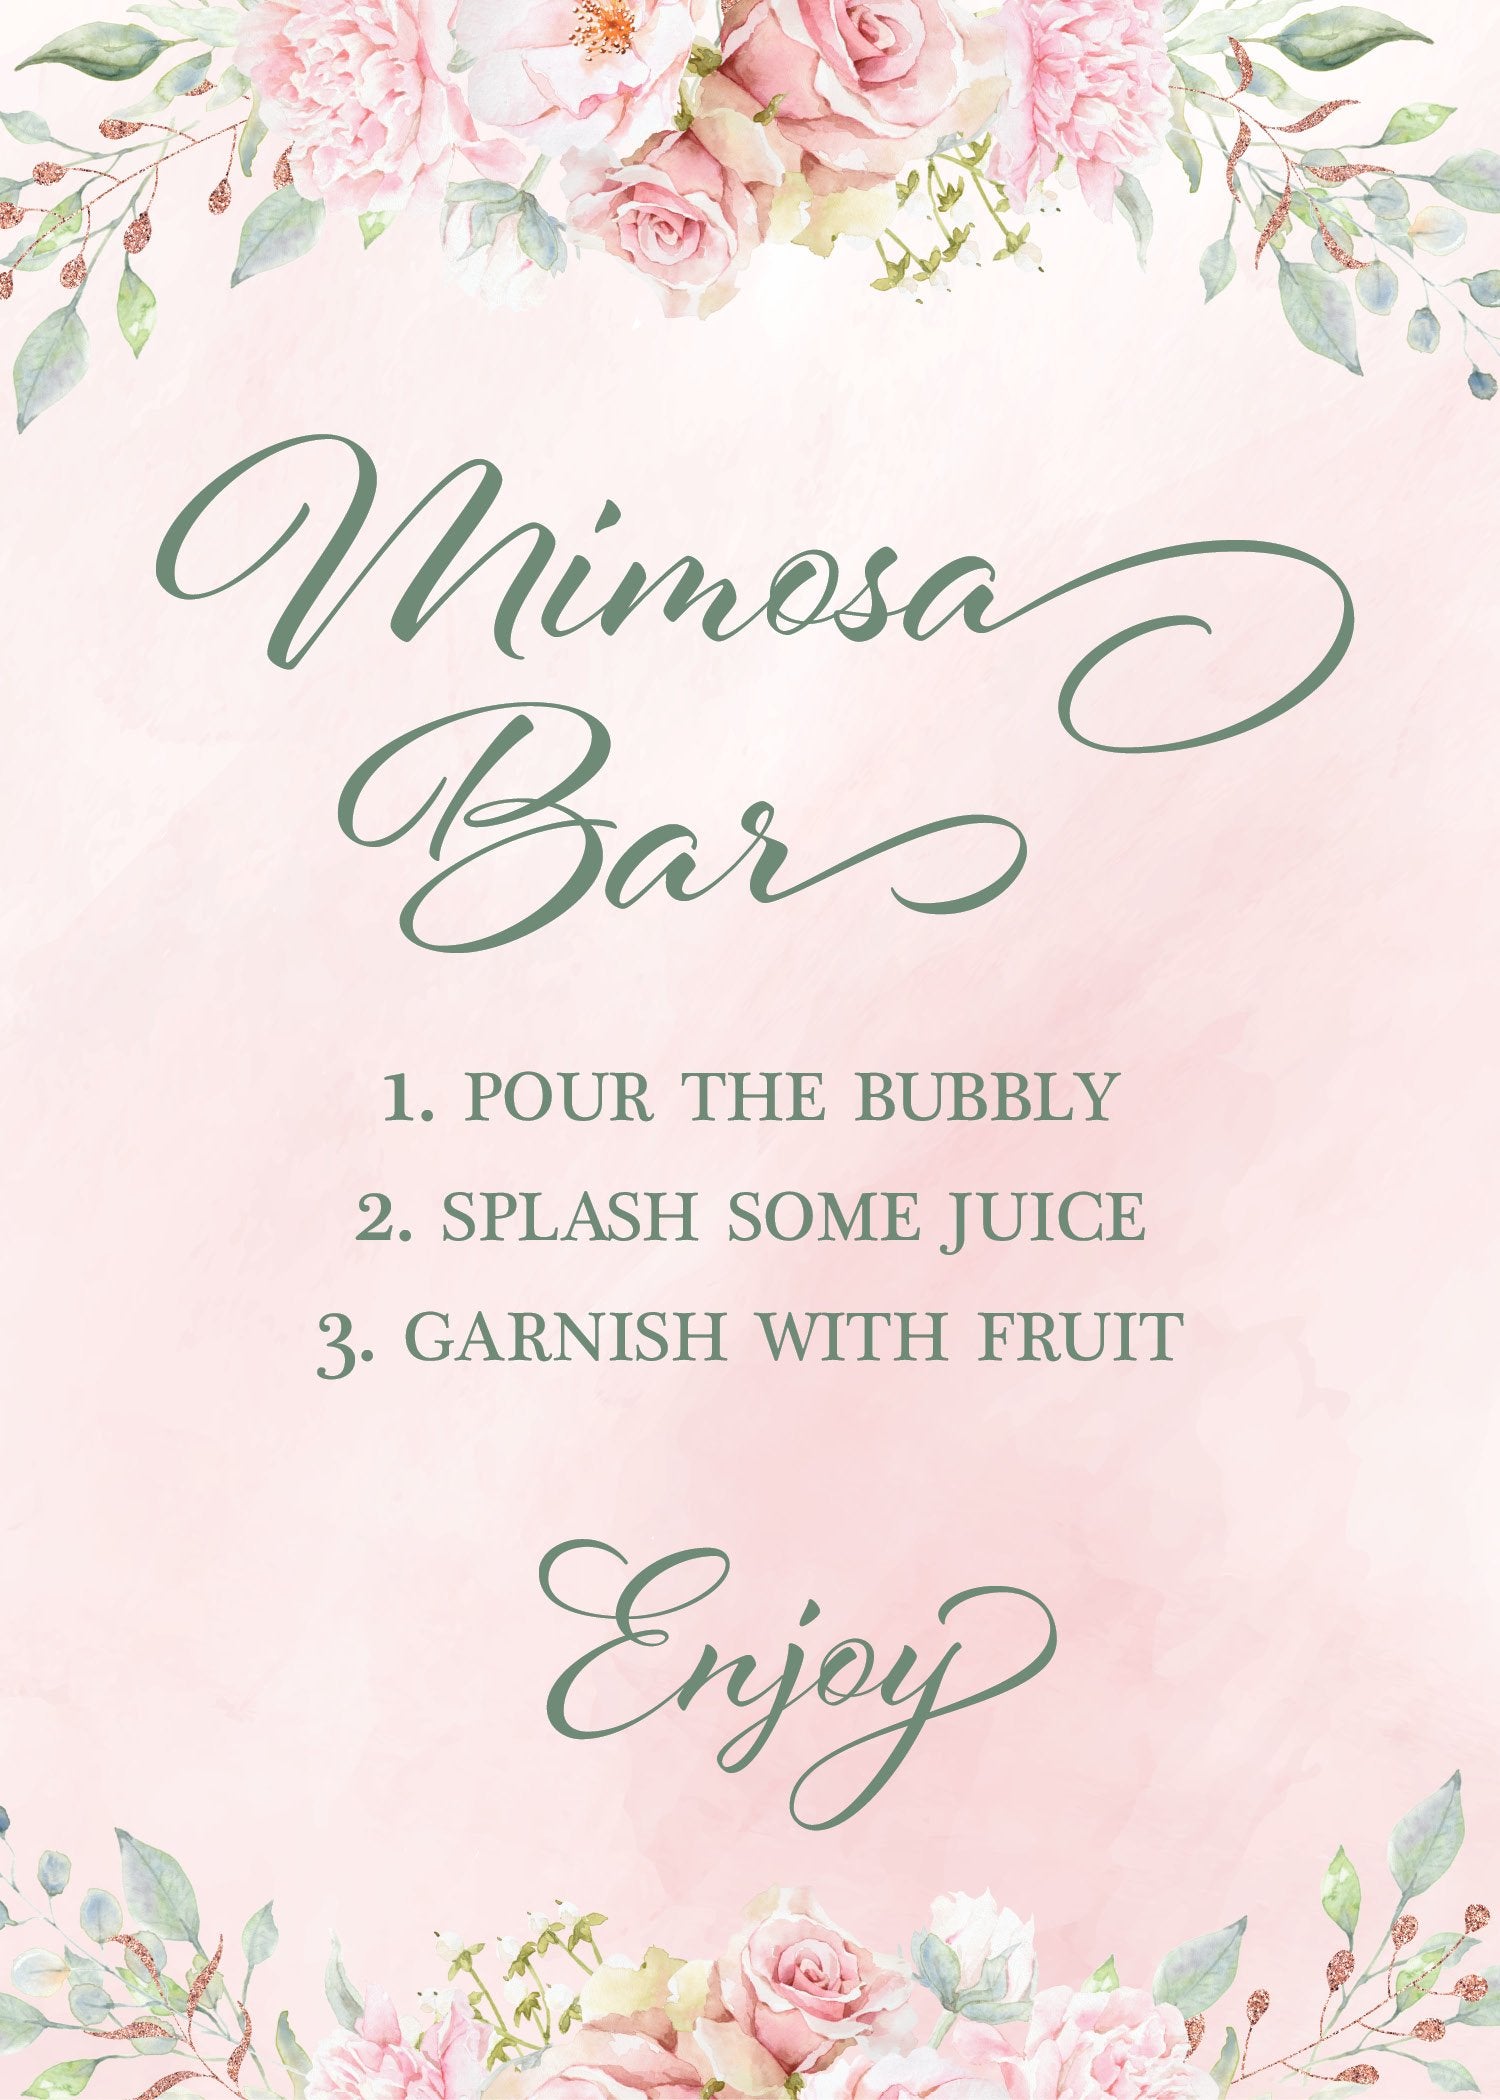 Blush Pink Floral Mimosa Bar Sign Printable, Bubbly Bar Sign